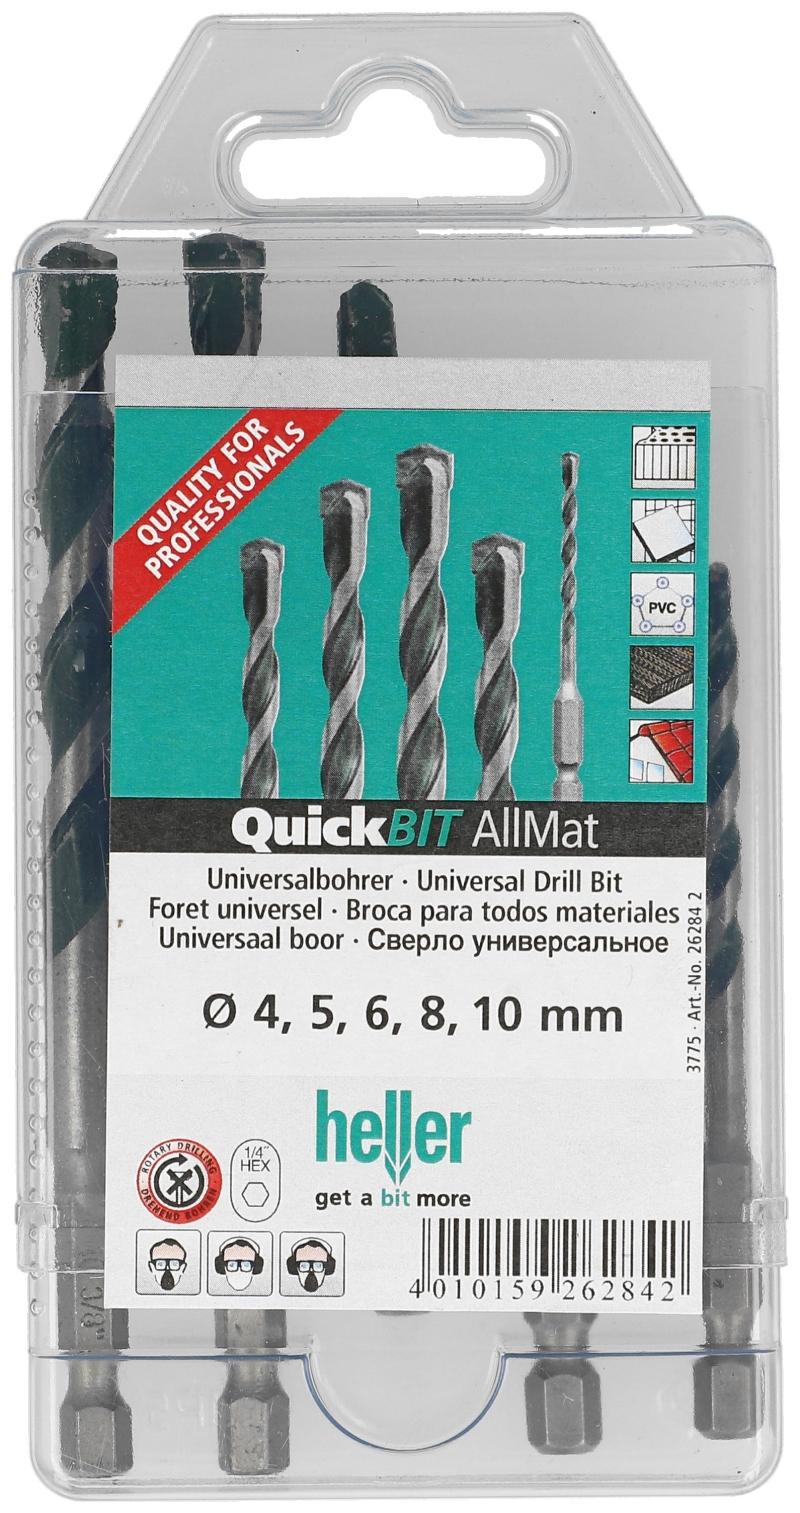 Heller Universalbohrer-Set 4,5,6,8,10 mm